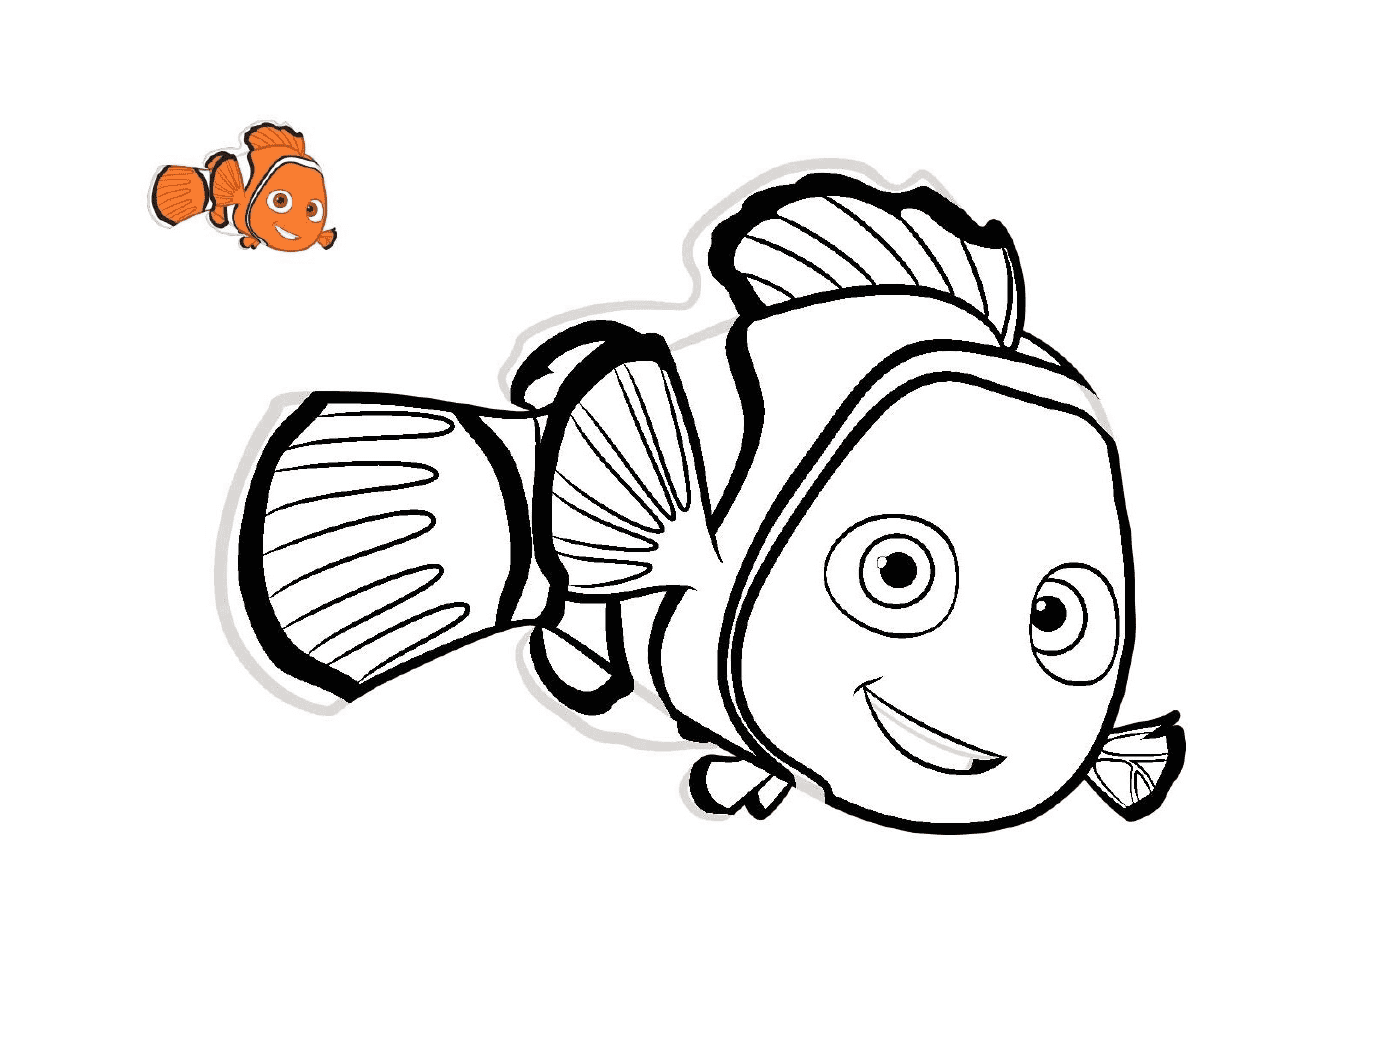   Un poisson rouge nommé Nemo de Disney 